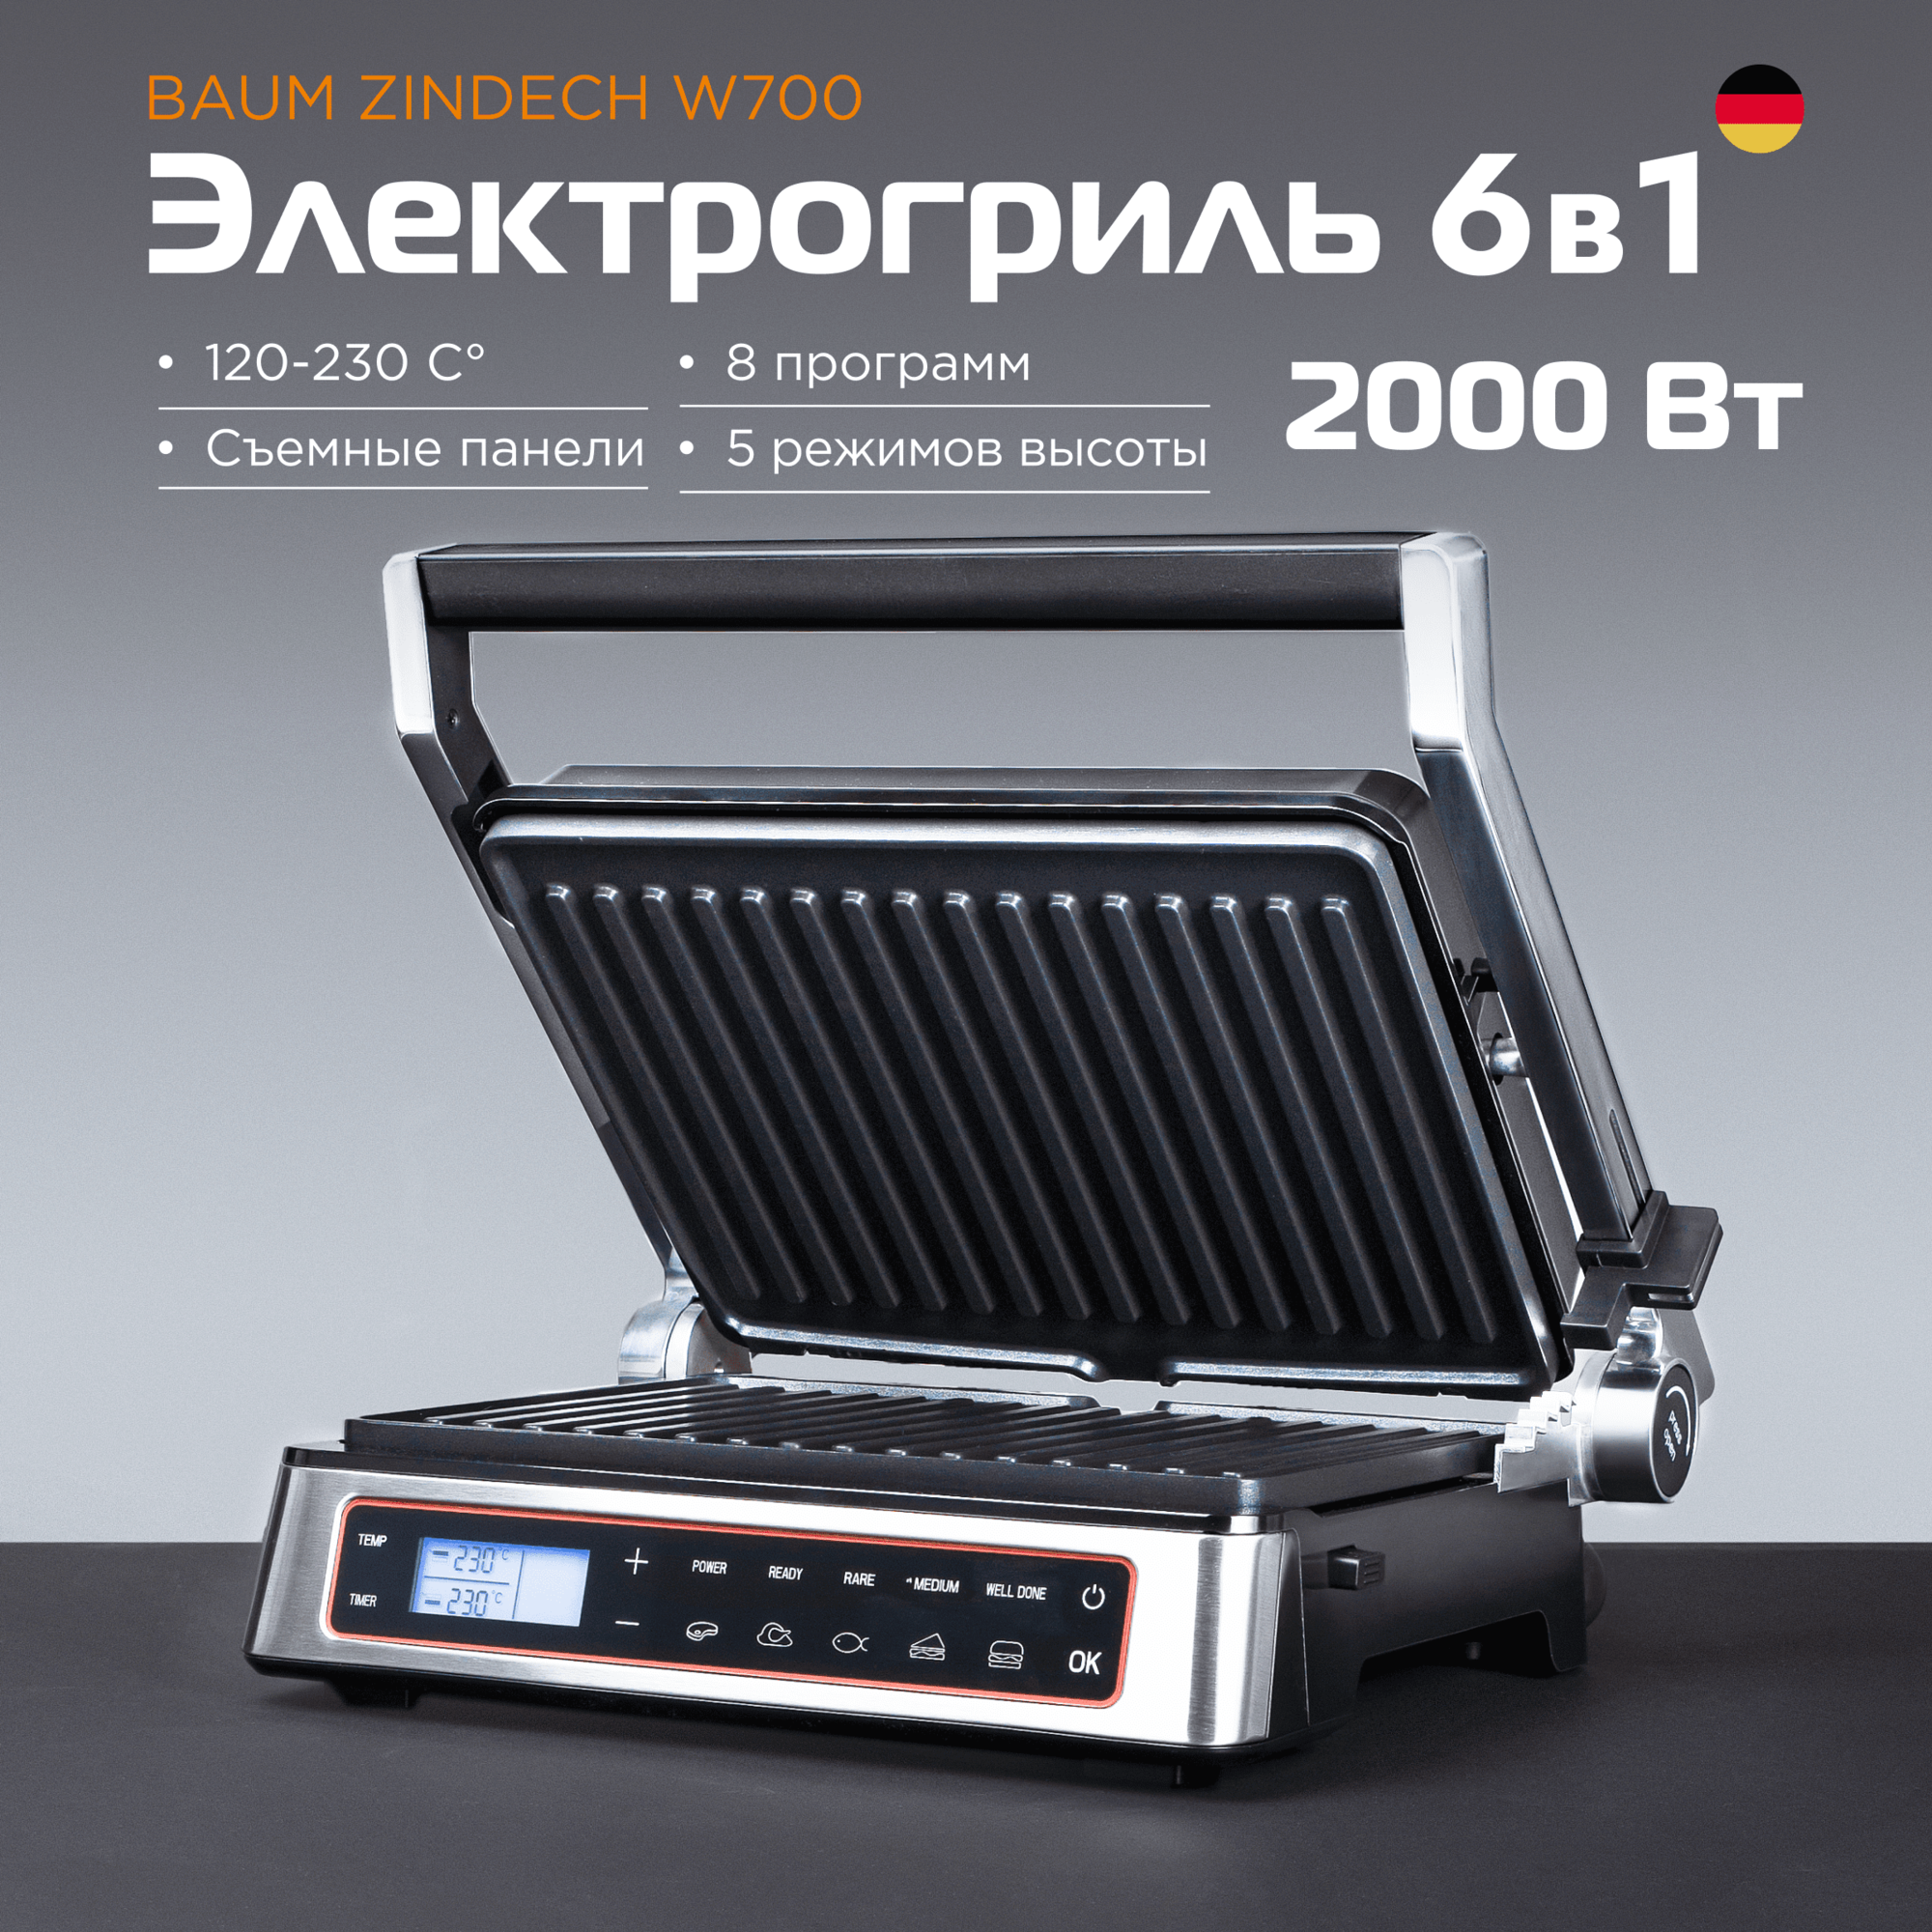 Гриль электрический BAUM ZINDECH W700 для приготовления блюд, электрогриль